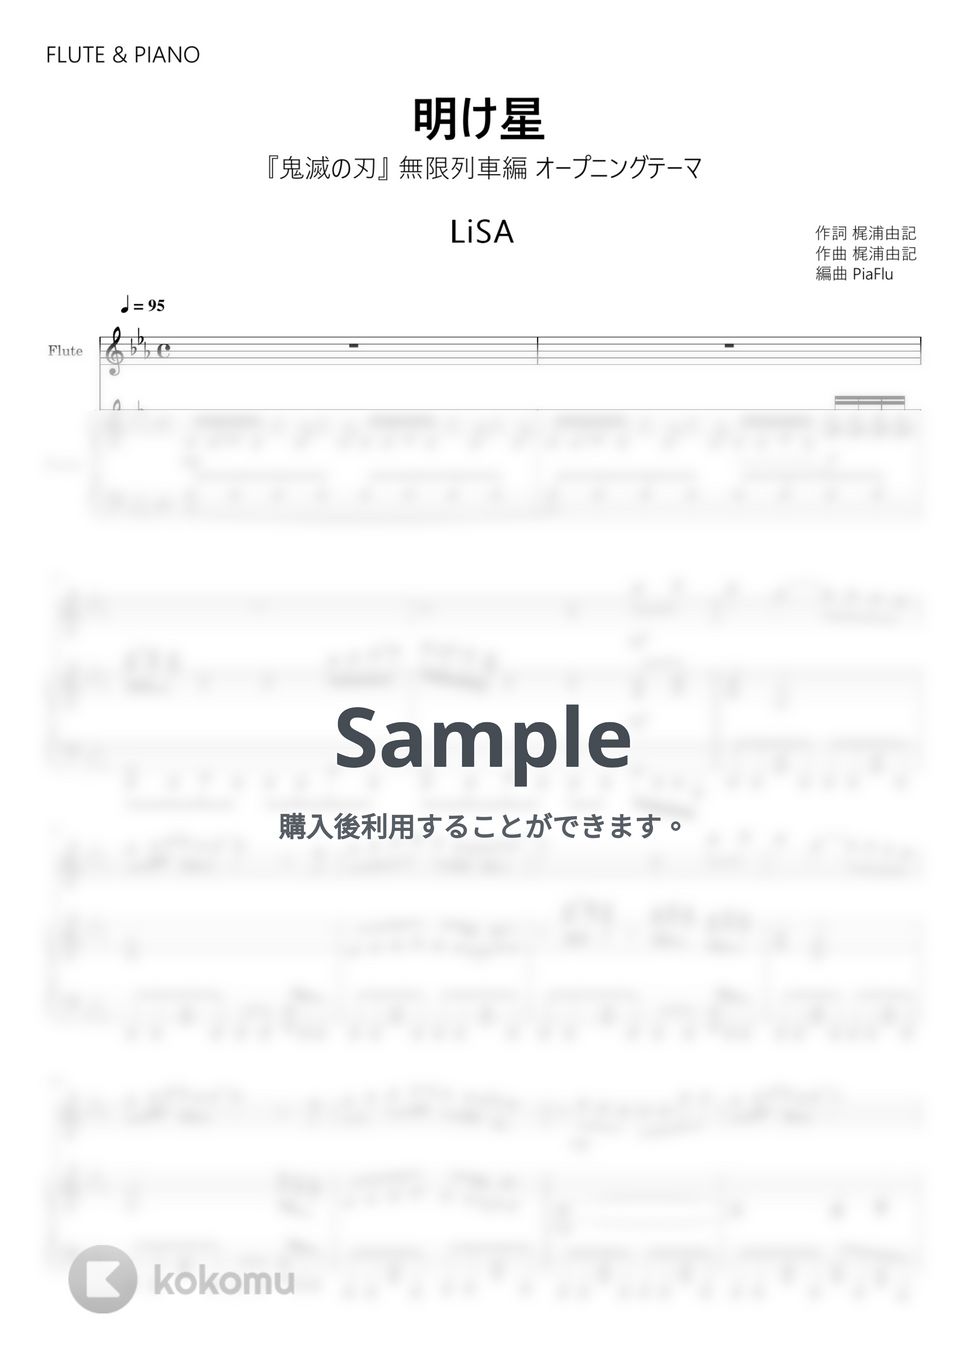 『鬼滅の刃』無限列車編 オープニングテーマ - 明け星 / LiSA (フルート&ピアノ伴奏) by PiaFlu